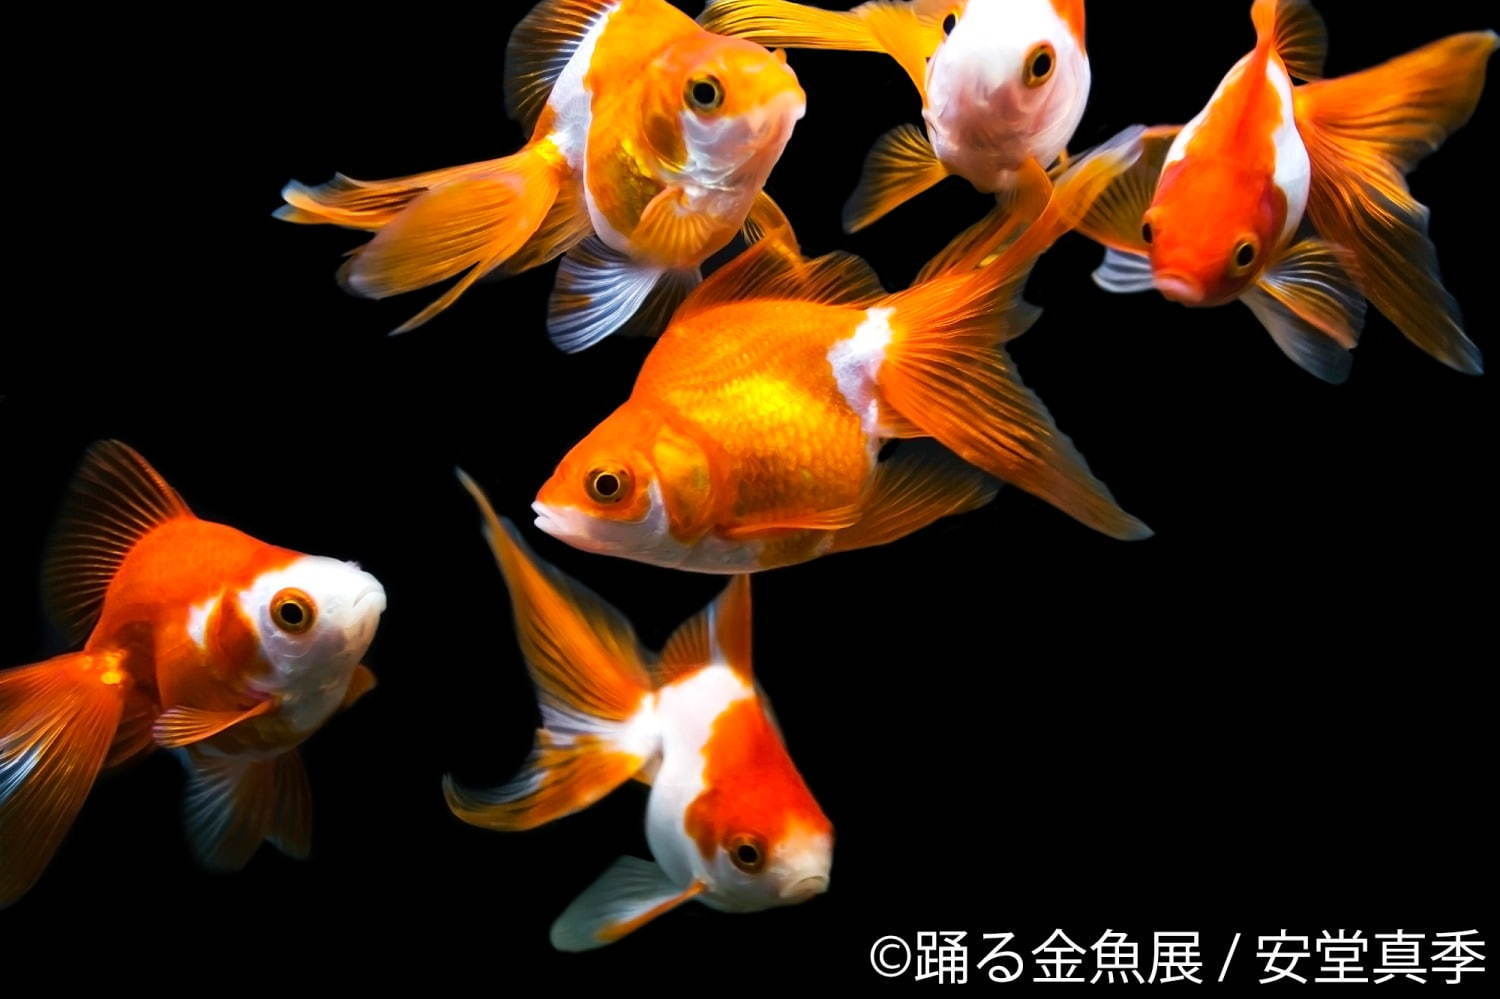 金魚の写真 イラスト展 踊る金魚展 東京 名古屋で ガラス